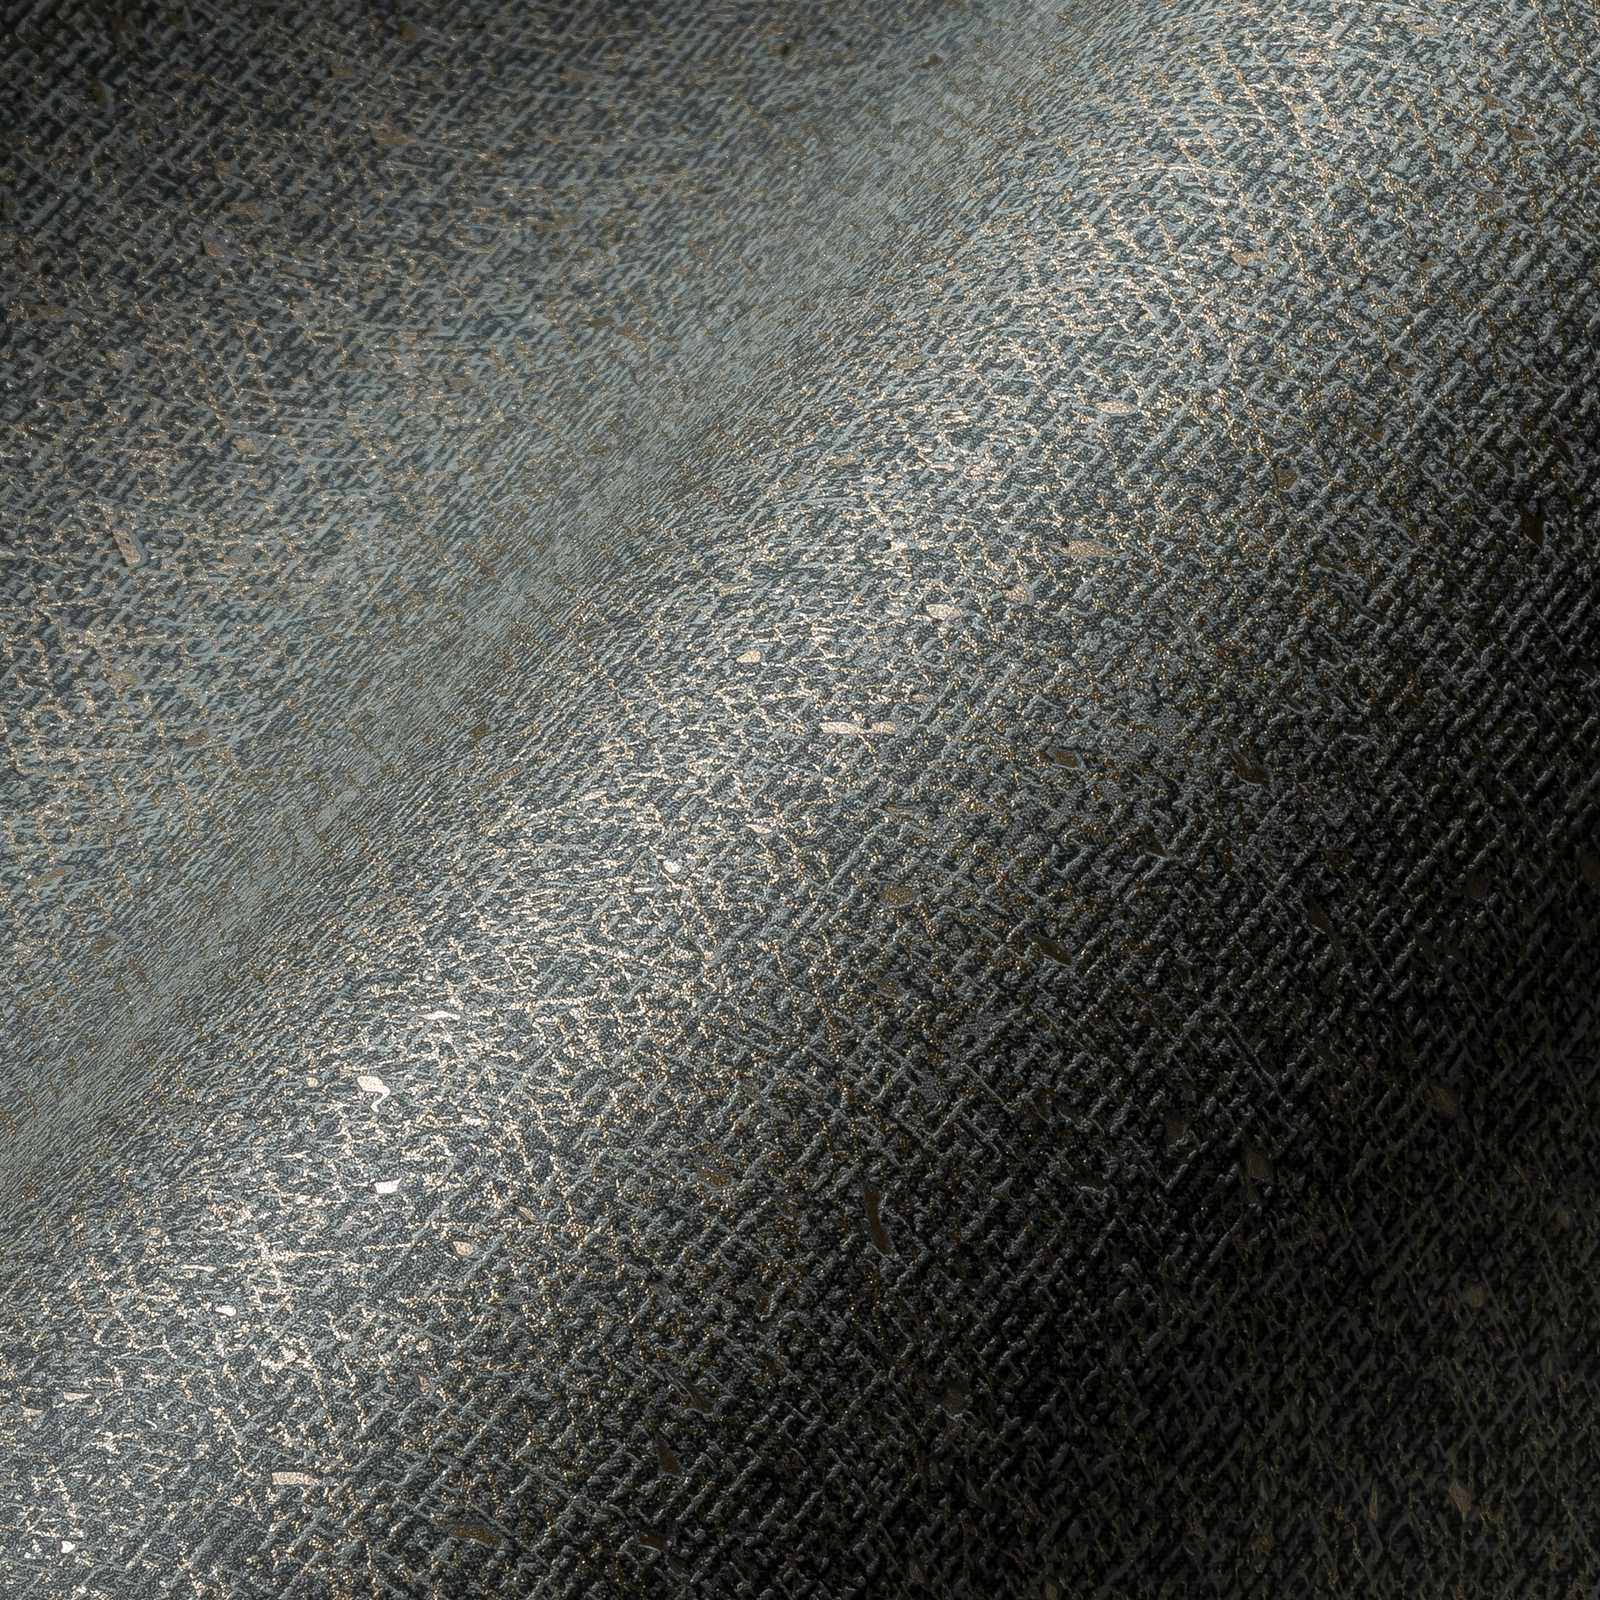             Tapete mit textiler Struktur und Metallic Akzent – Grau, Metallic
        